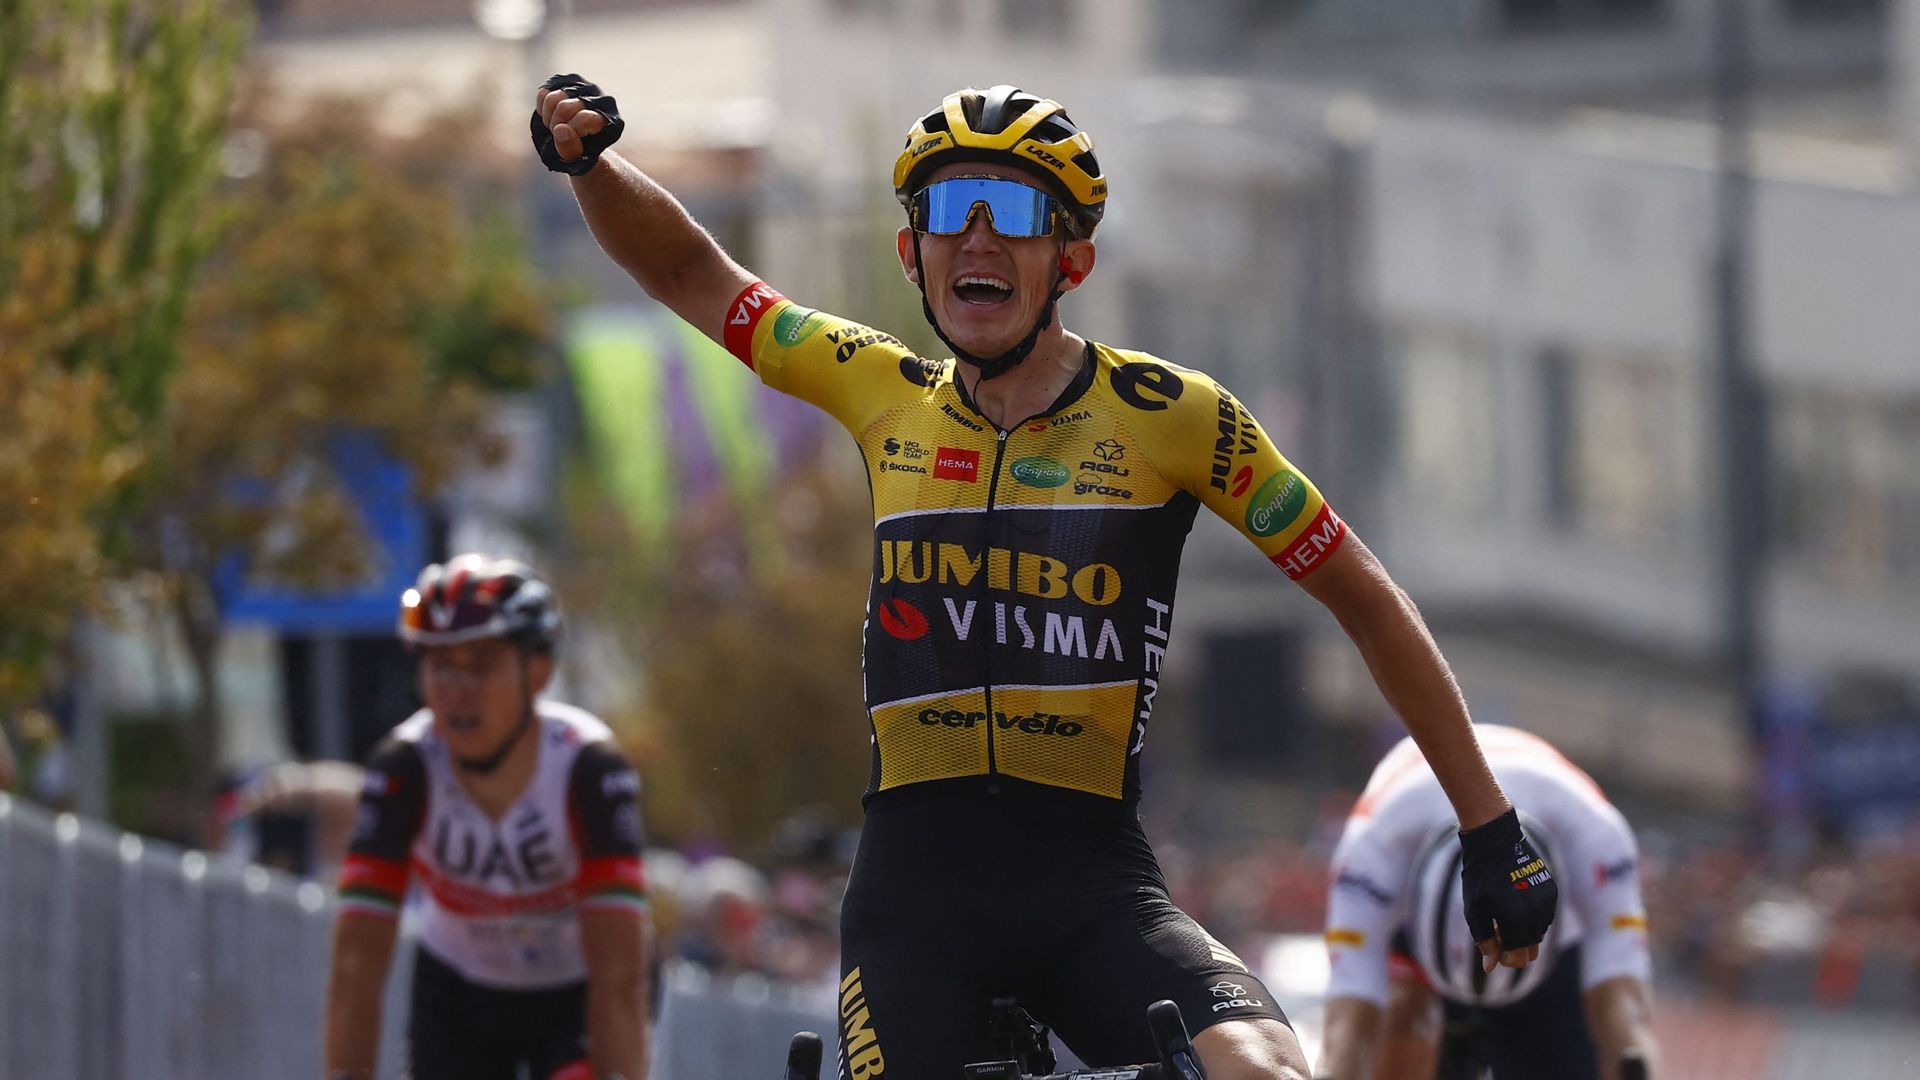 Giro 2022 : les classements après la septième étape remportée par Bouwman, López toujours leader